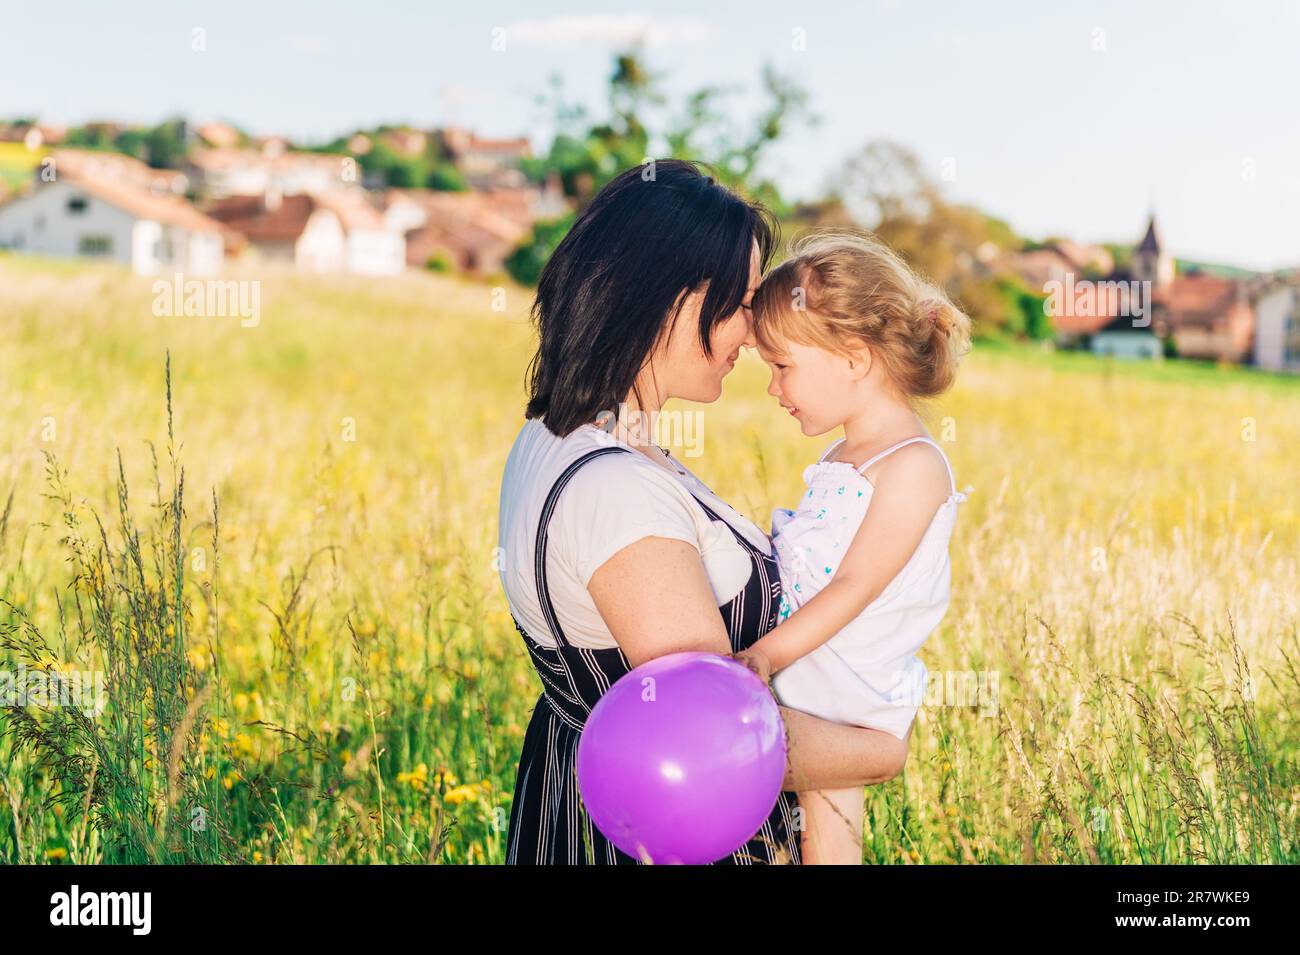 Glückliche junge Mutter, die eine kleine Tochter in den Armen hält, mitten auf einem wunderschönen Sommerfeld, Kind, das mit einem lila Ballon spielt Stockfoto